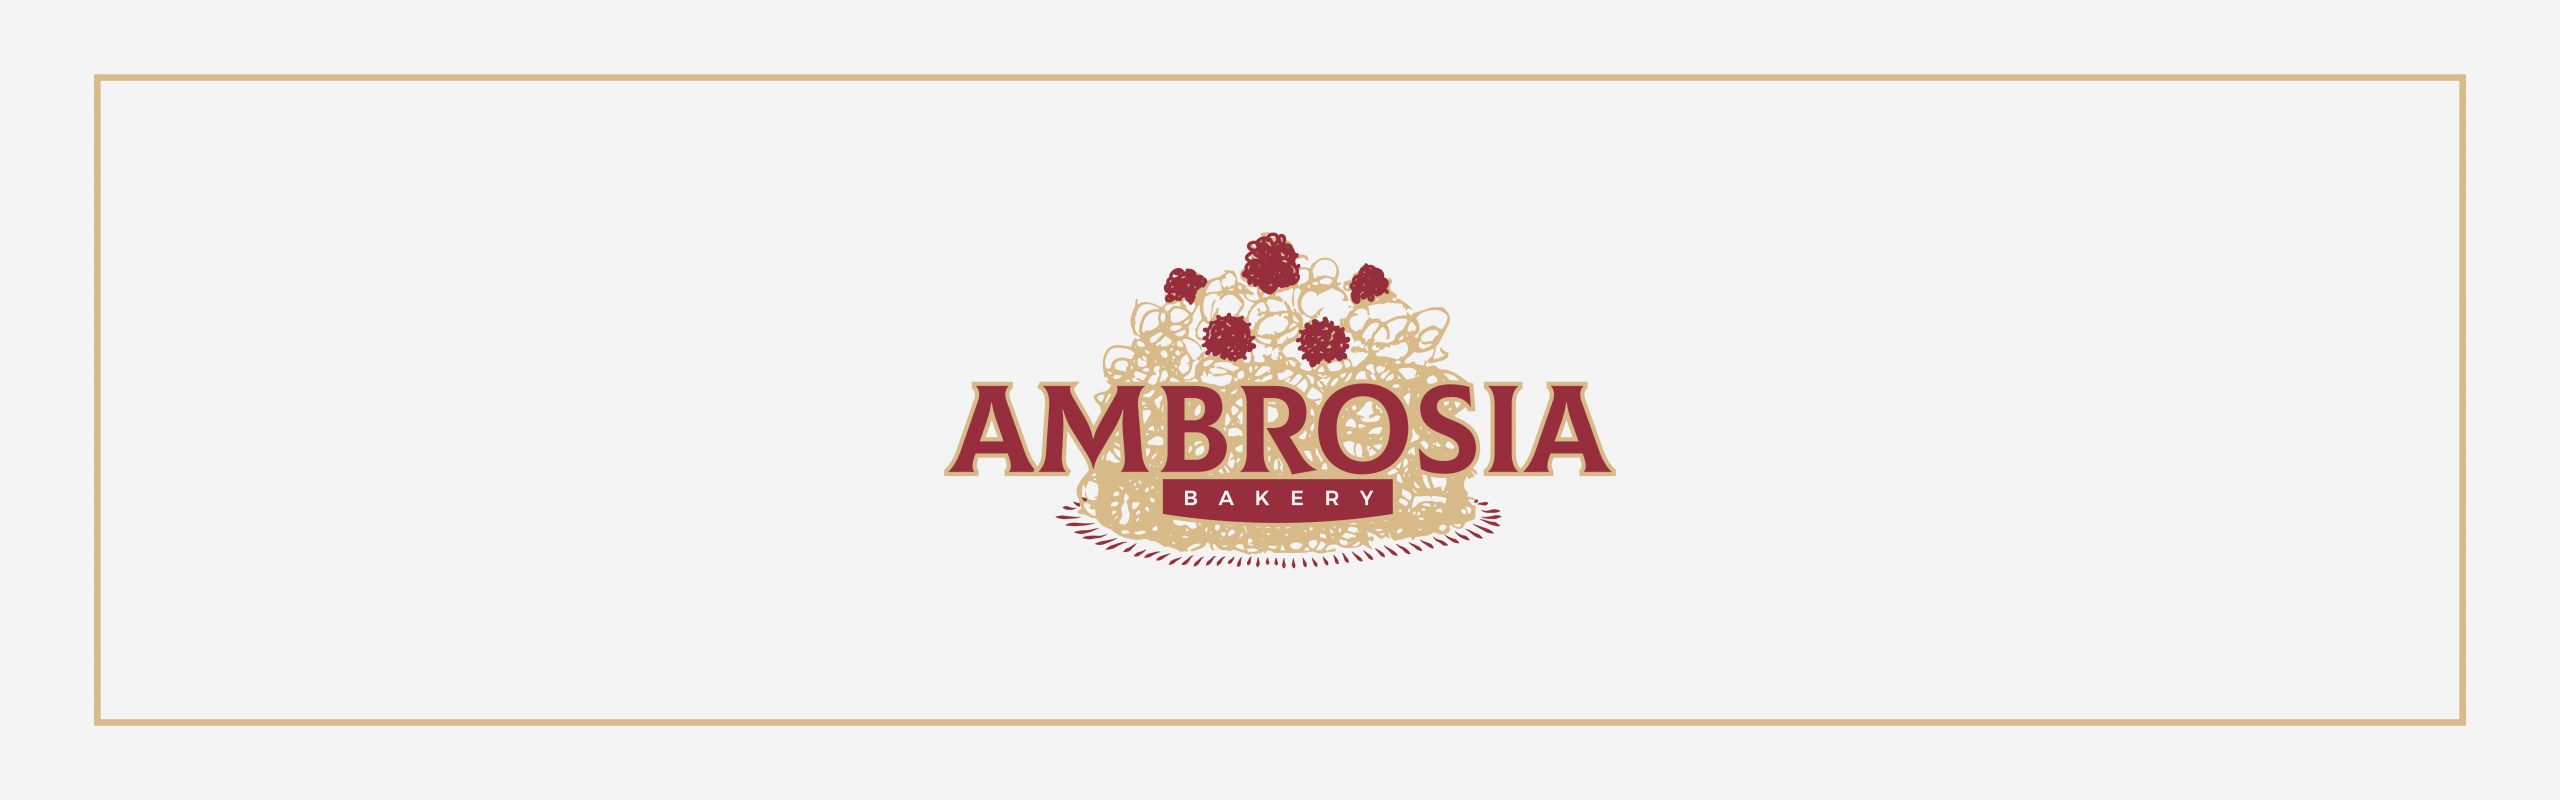 Blueberry Cheesecake – The Ambrosia